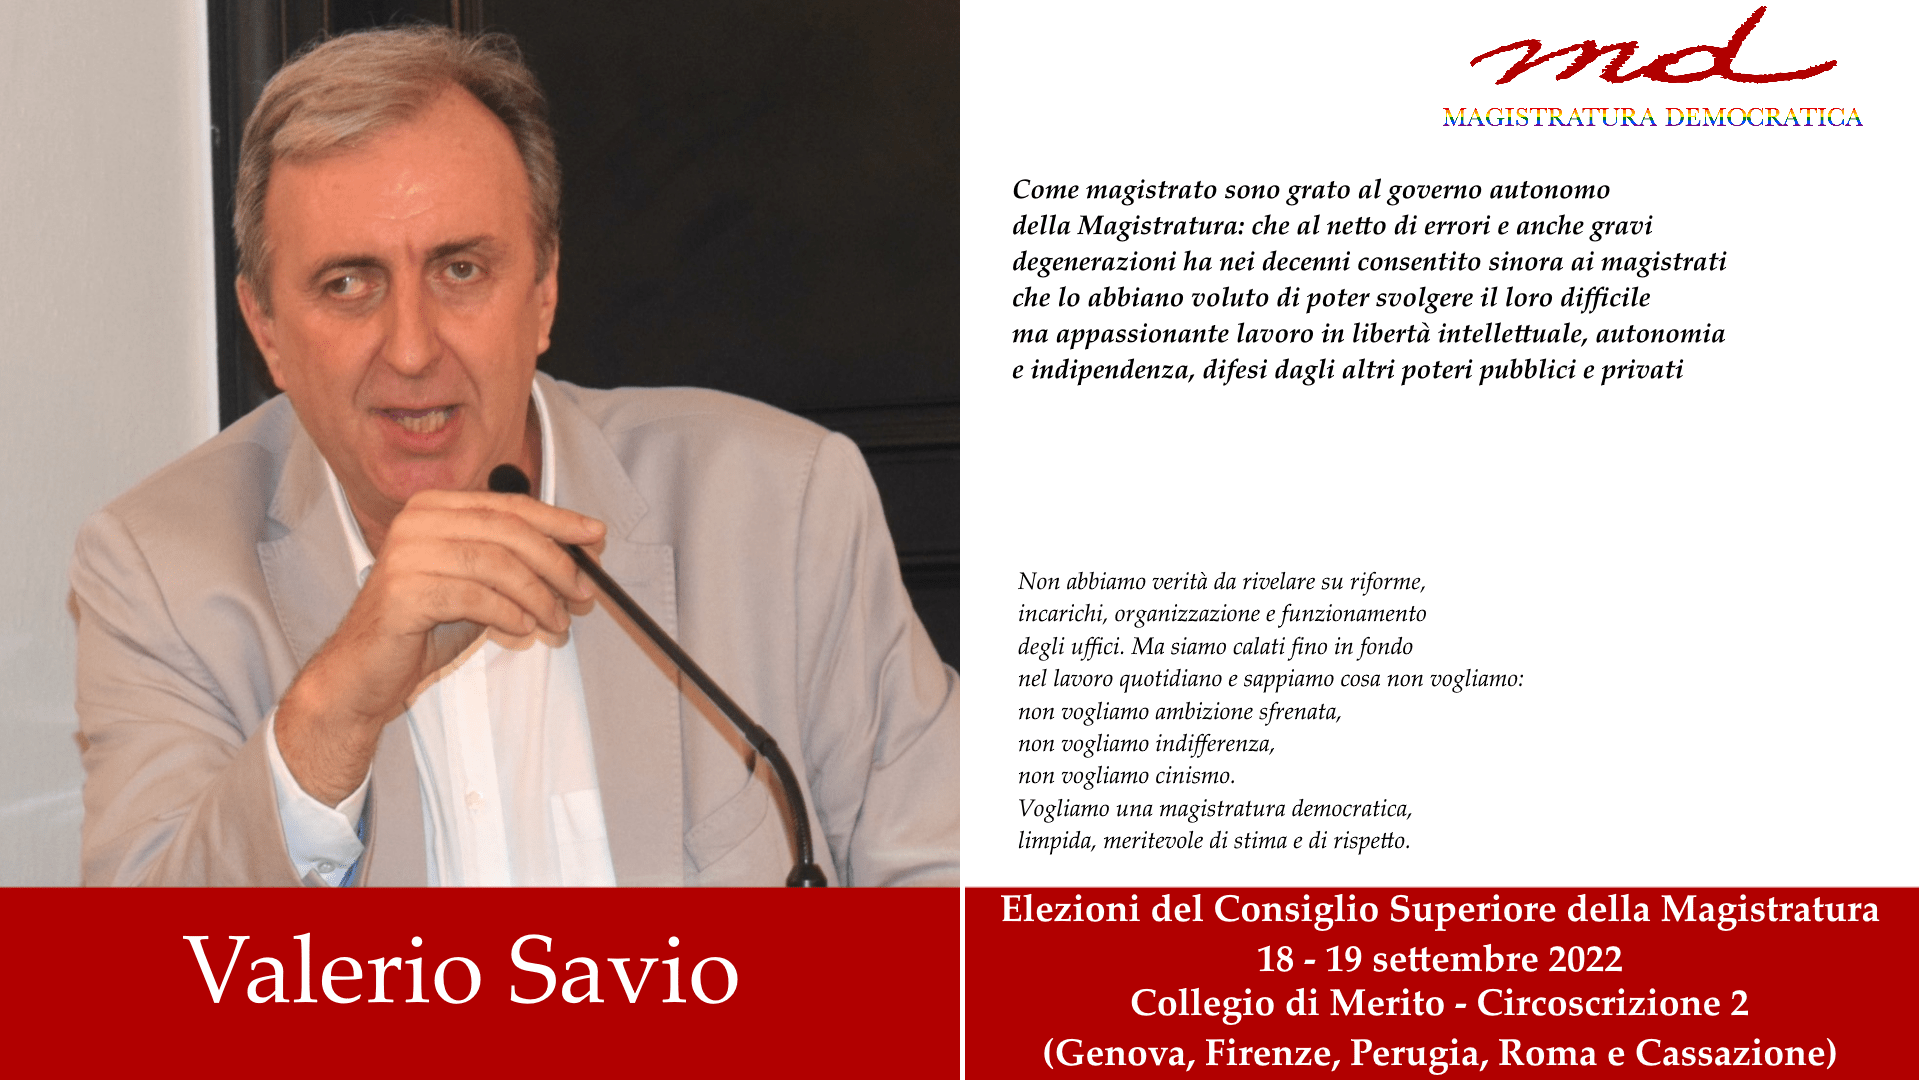 Valerio Savio